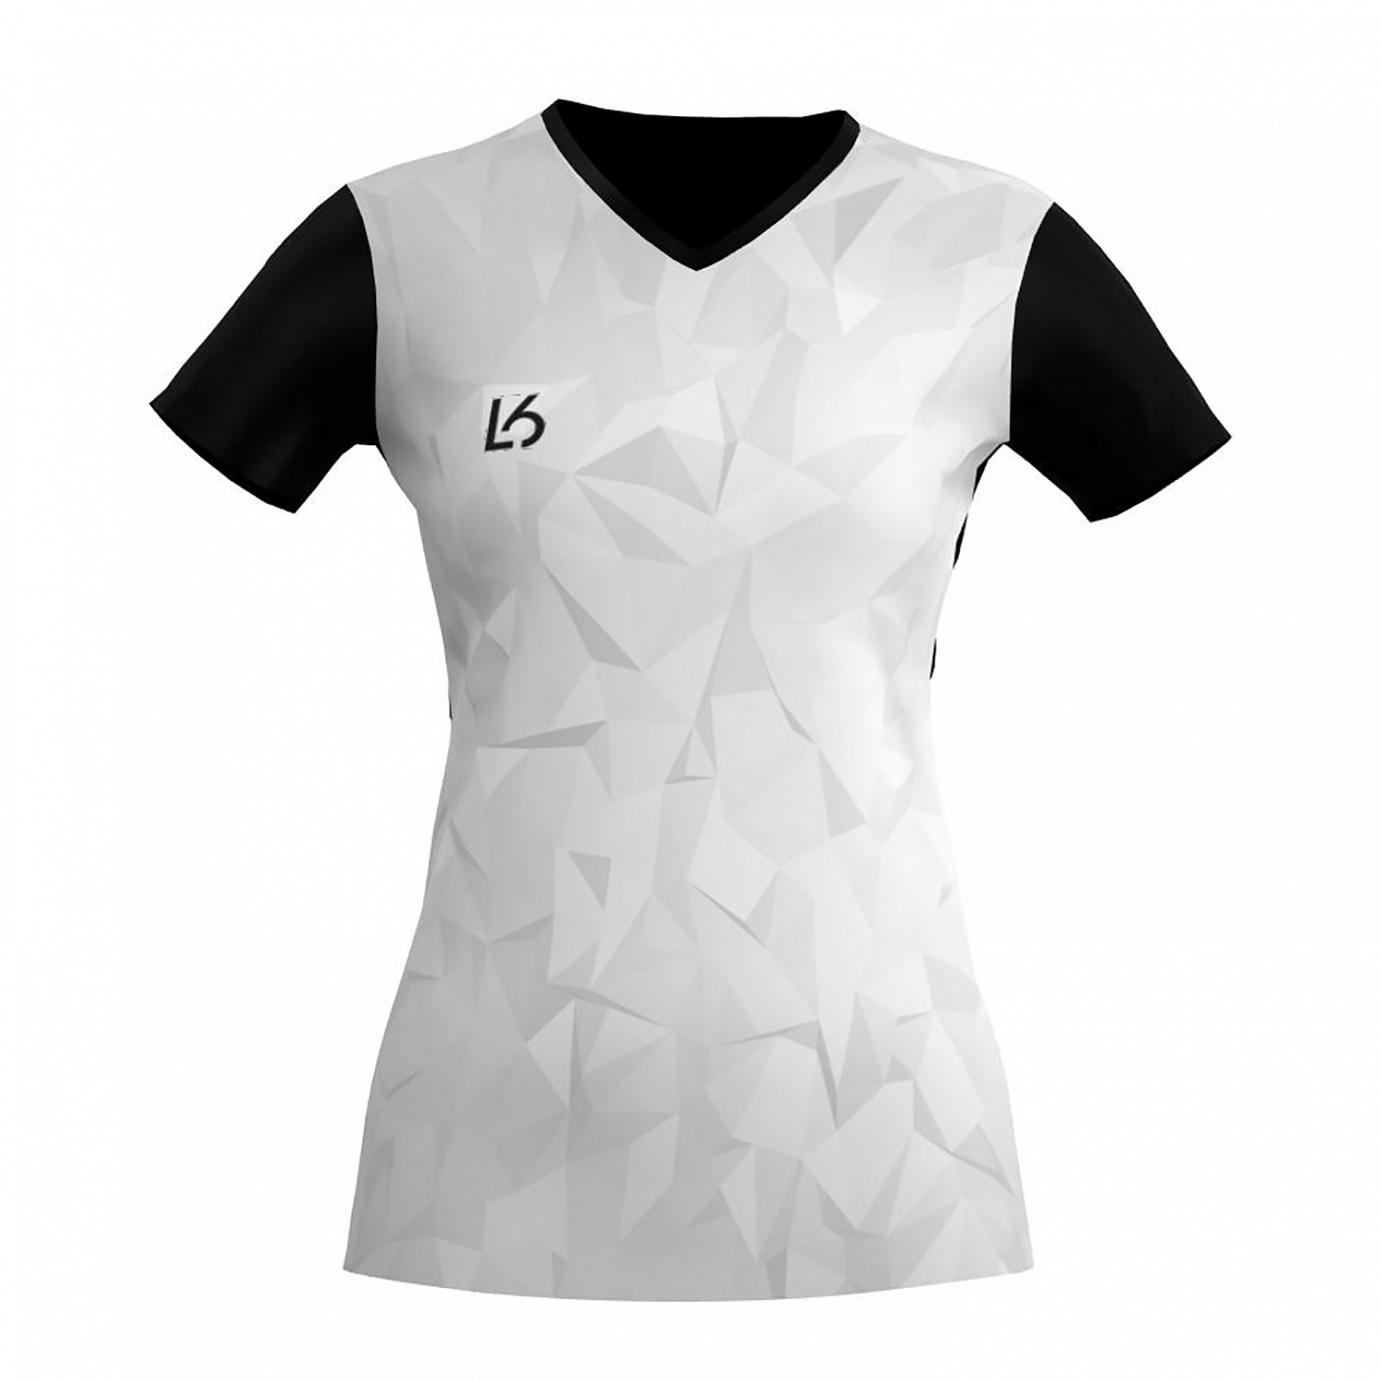 L6 V-Neck Trikot Women - Polygon White - Badminton Shop Franken